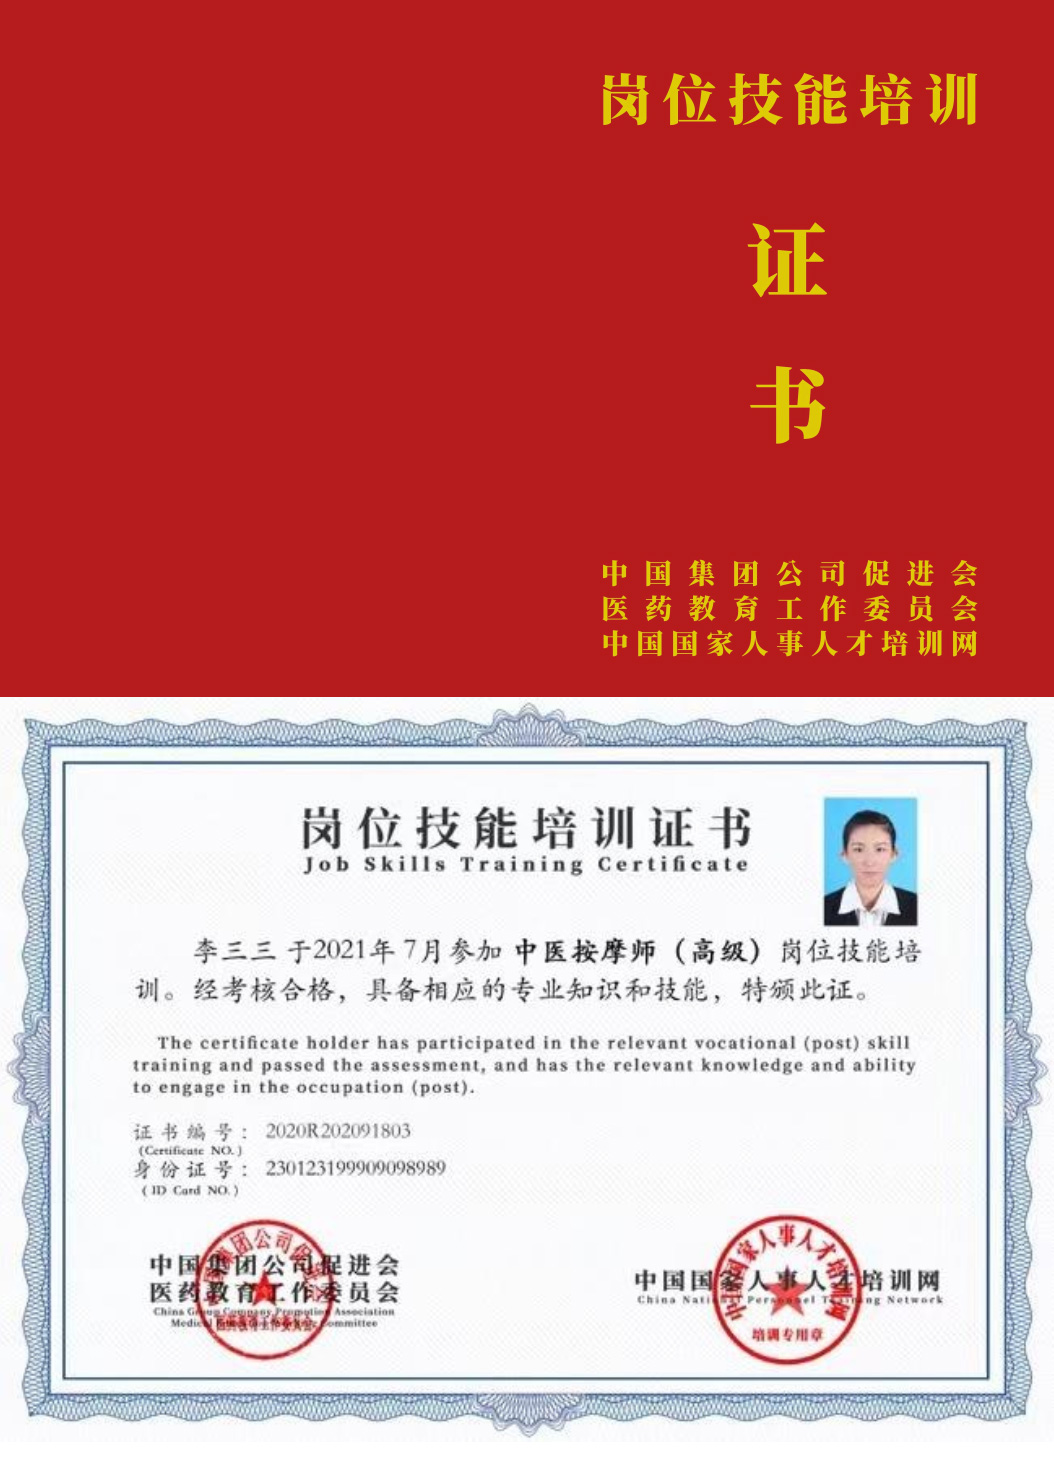 中国国家人事人才培训网 养老照护师 岗位技能培训证书